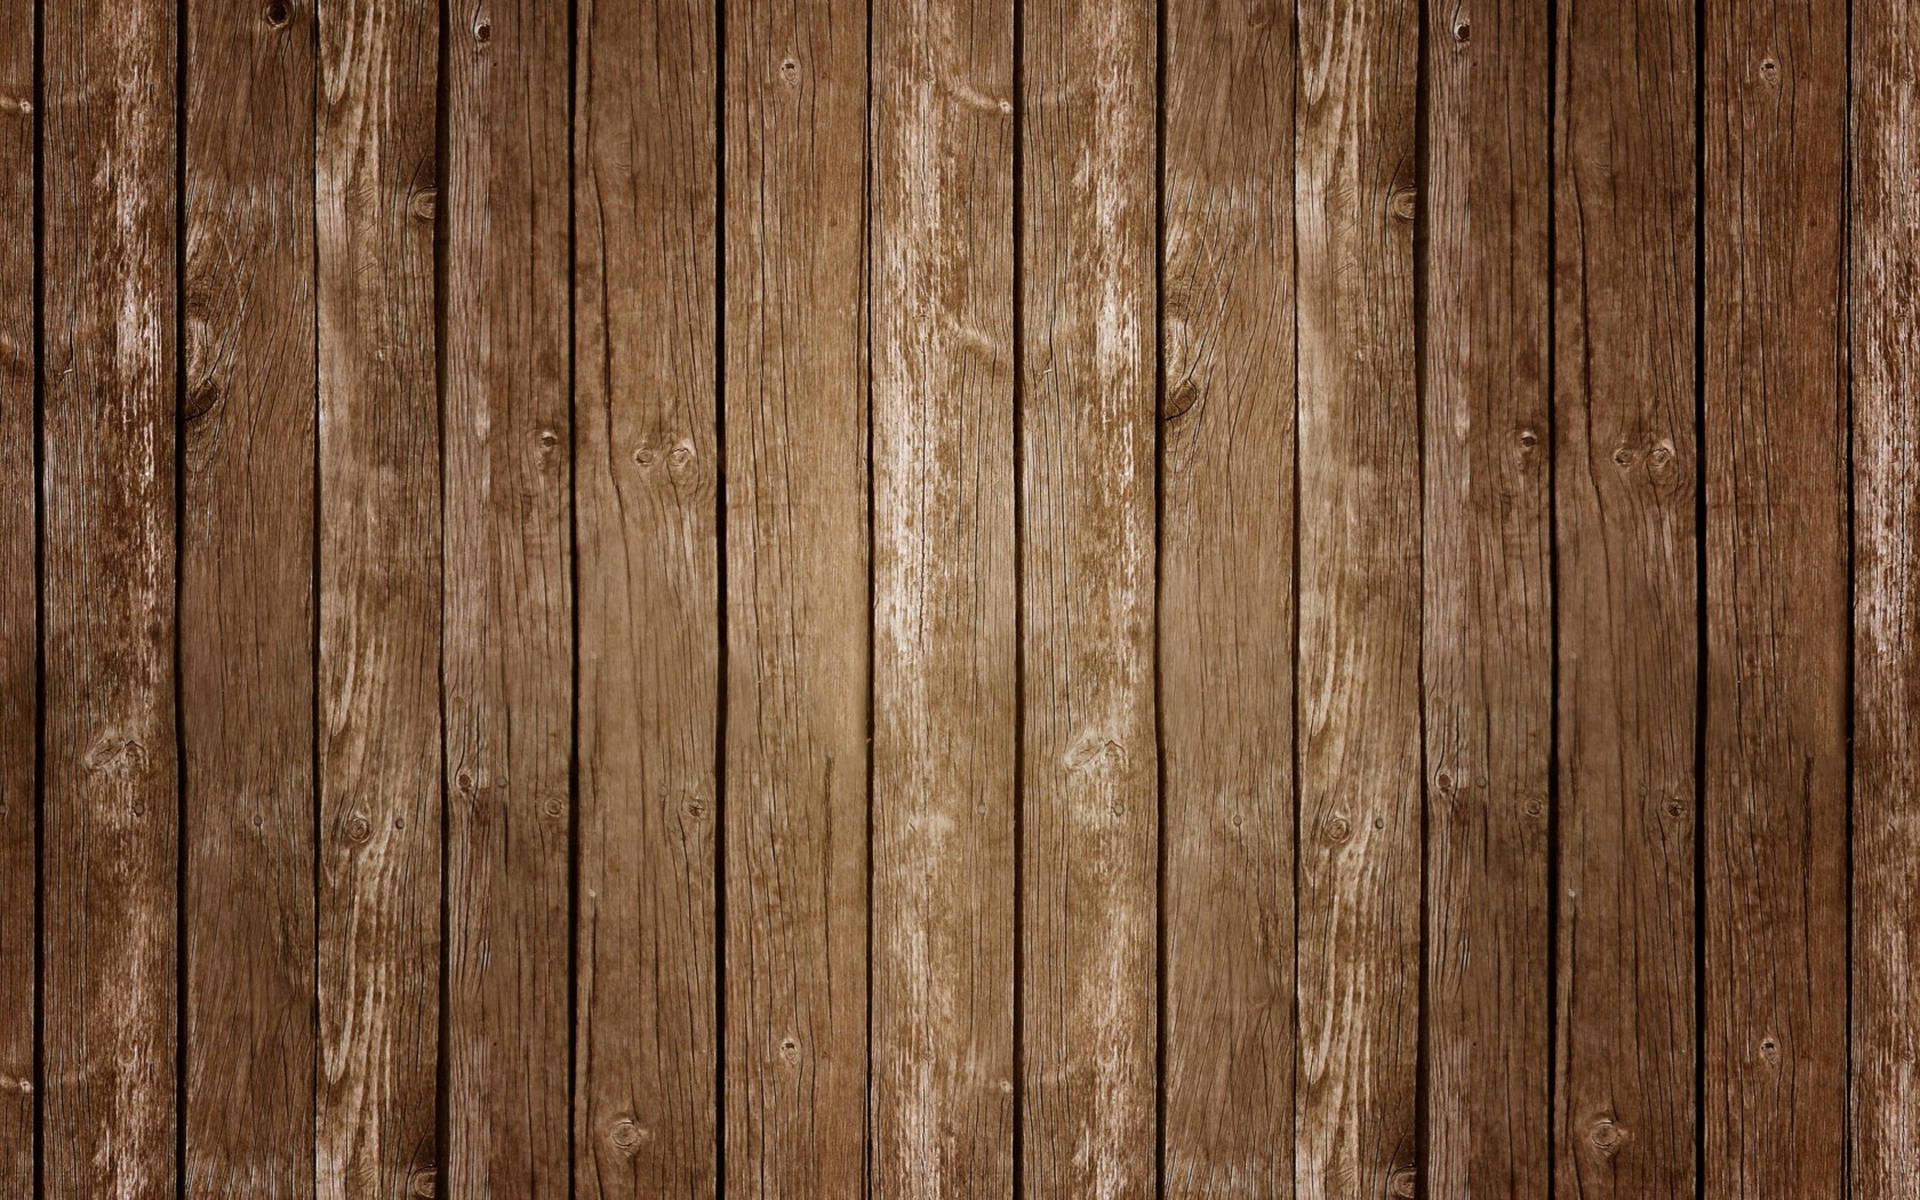 Tải hình nền gỗ miễn phí: Nhận ngay hình nền gỗ miễn phí để trang trí cho máy tính của bạn ngay hôm nay. Những bức ảnh này sẽ mang đến cho bạn một cảm giác về sự tự nhiên và đẹp đẽ. Nếu bạn yêu thích phong cách mộc mạc của gỗ, hãy truy cập vào trang web của chúng tôi để tải xuống những hình ảnh độc đáo này.